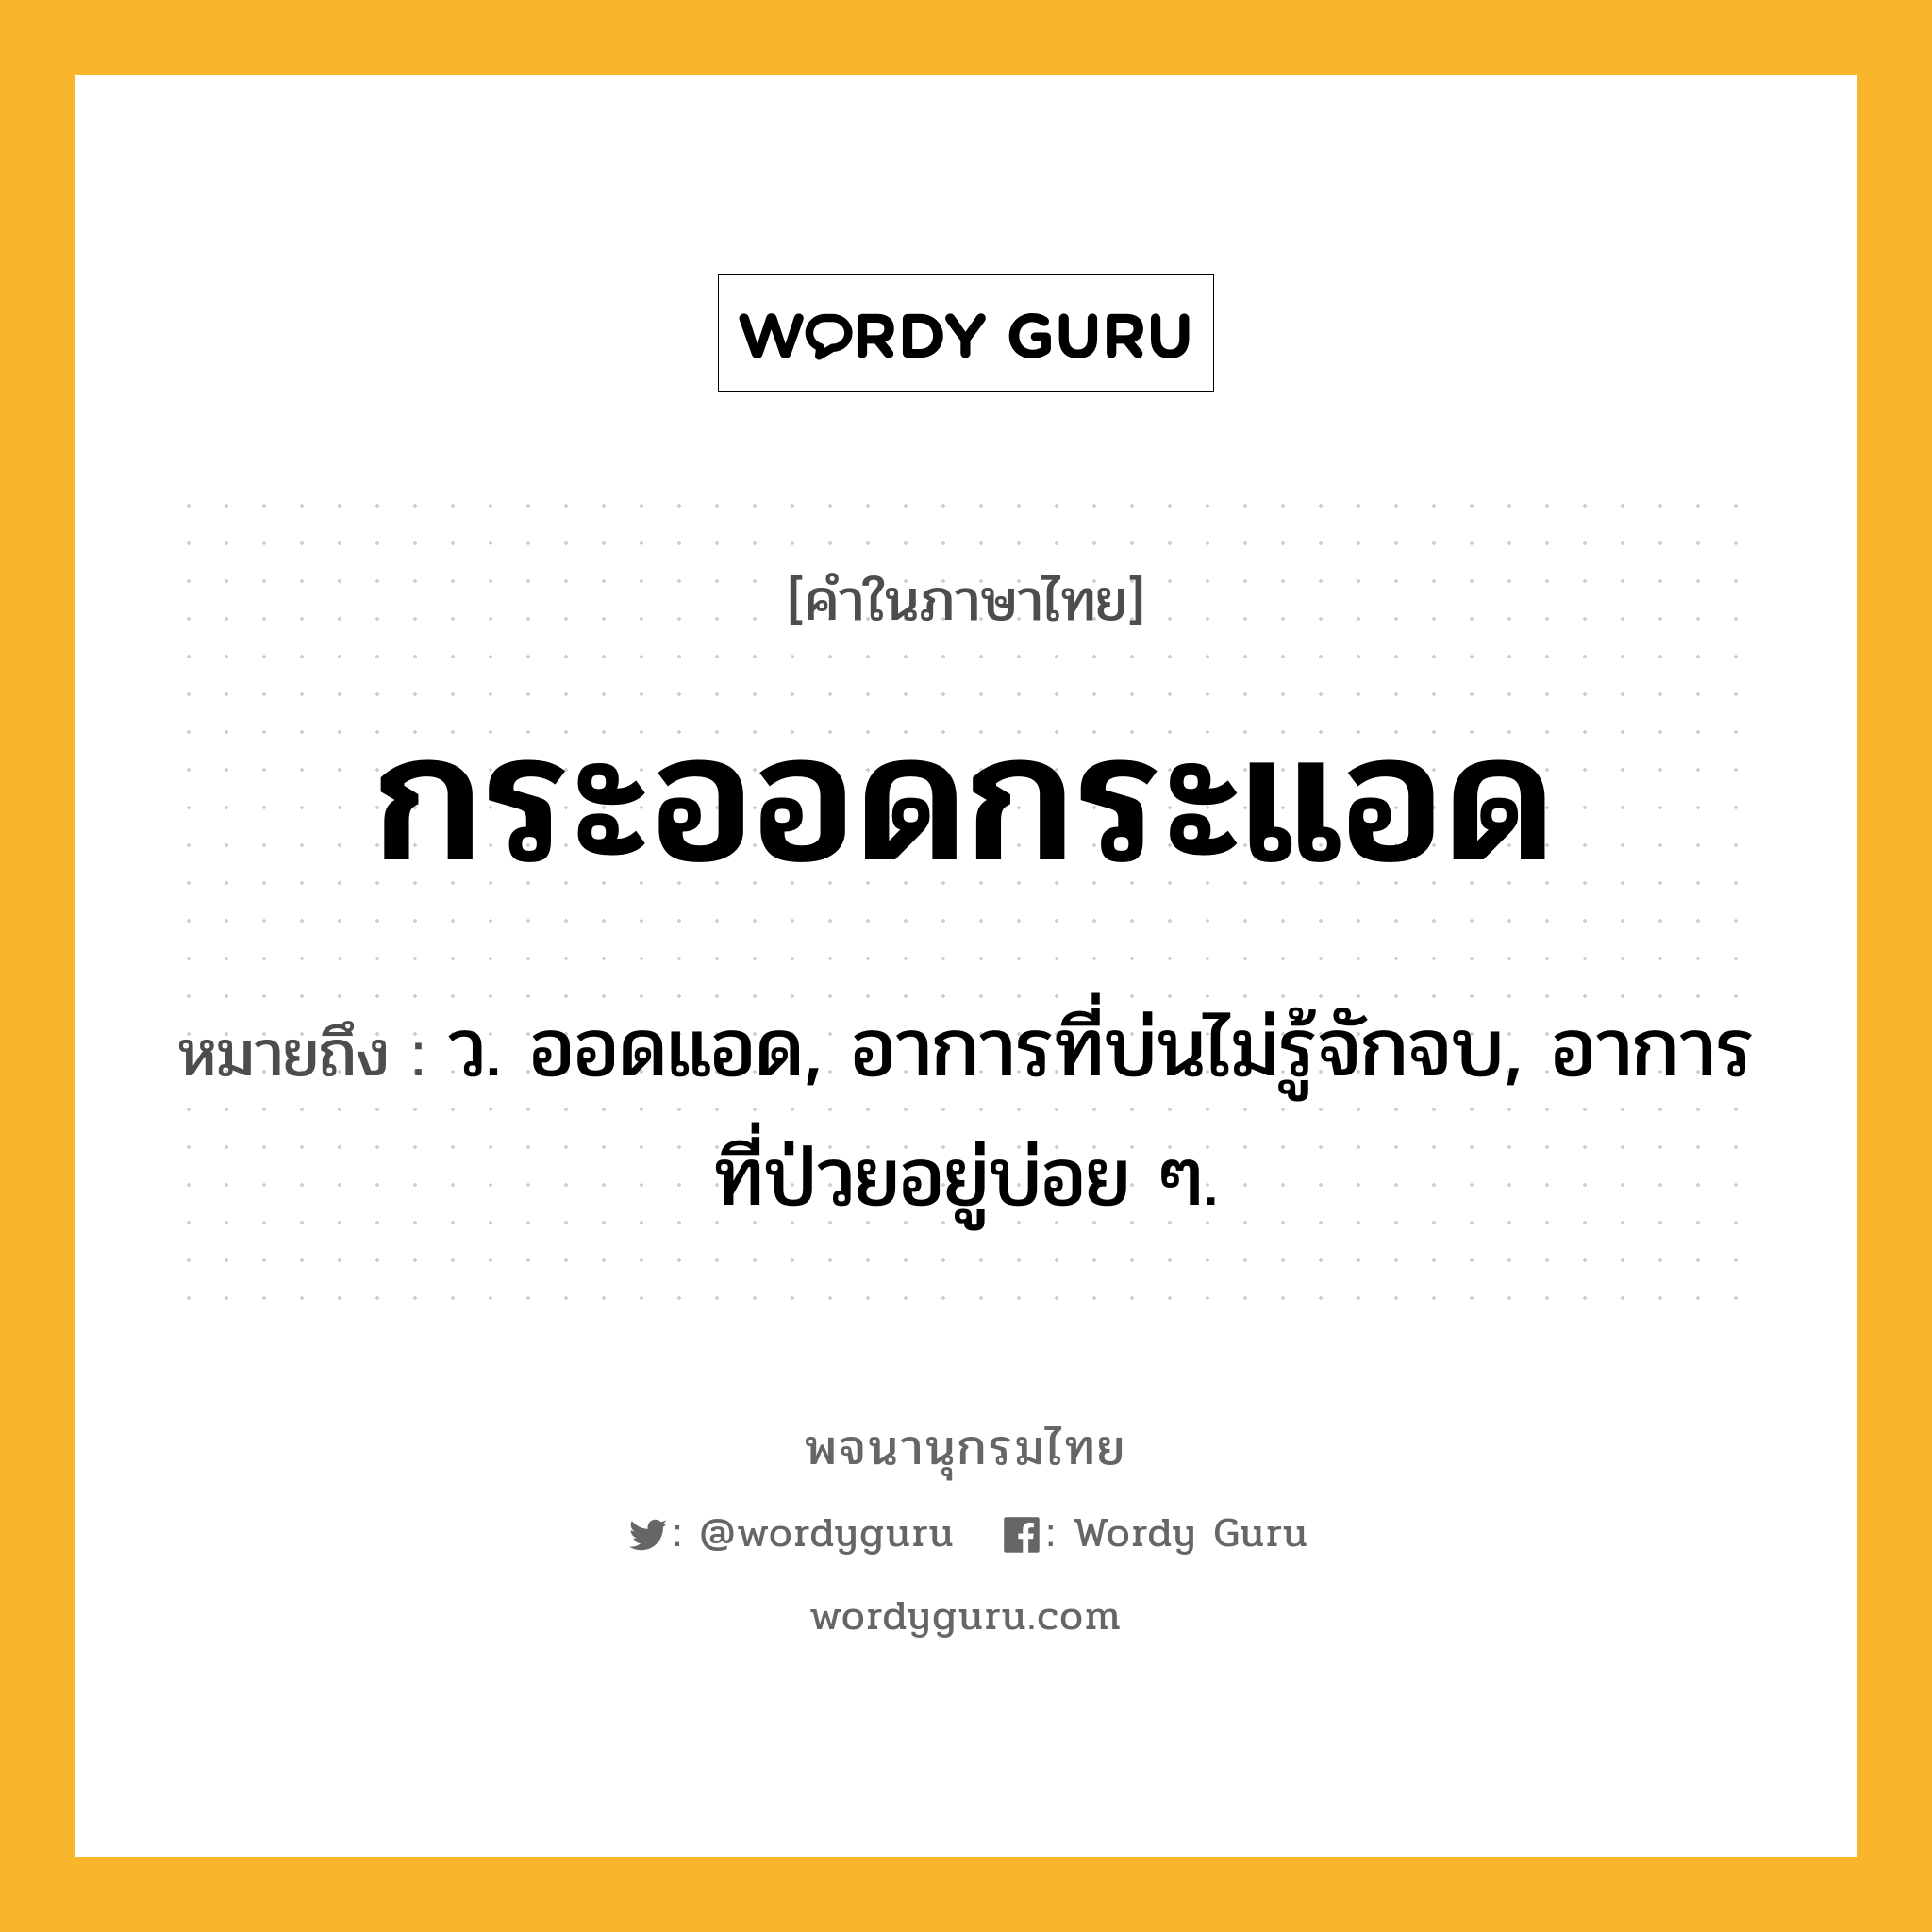 กระออดกระแอด หมายถึงอะไร?, คำในภาษาไทย กระออดกระแอด หมายถึง ว. ออดแอด, อาการที่บ่นไม่รู้จักจบ, อาการที่ป่วยอยู่บ่อย ๆ.